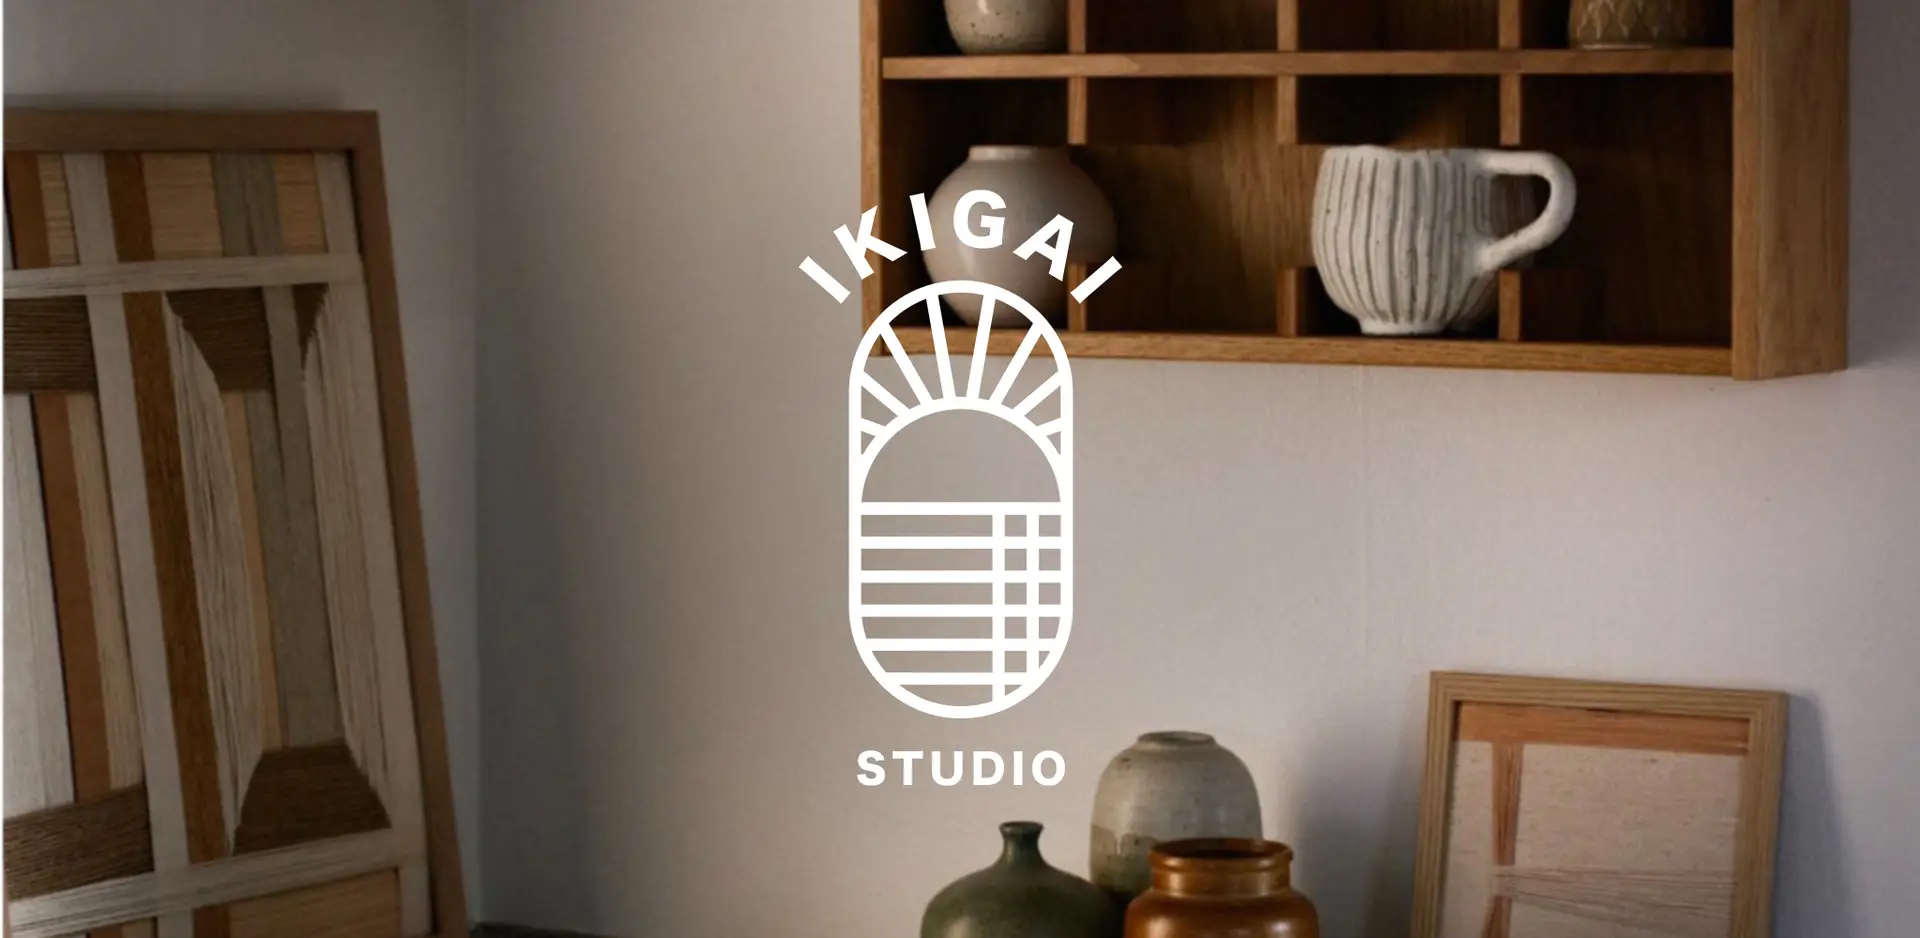 Virksomheds logo designet til Ikigai Studio